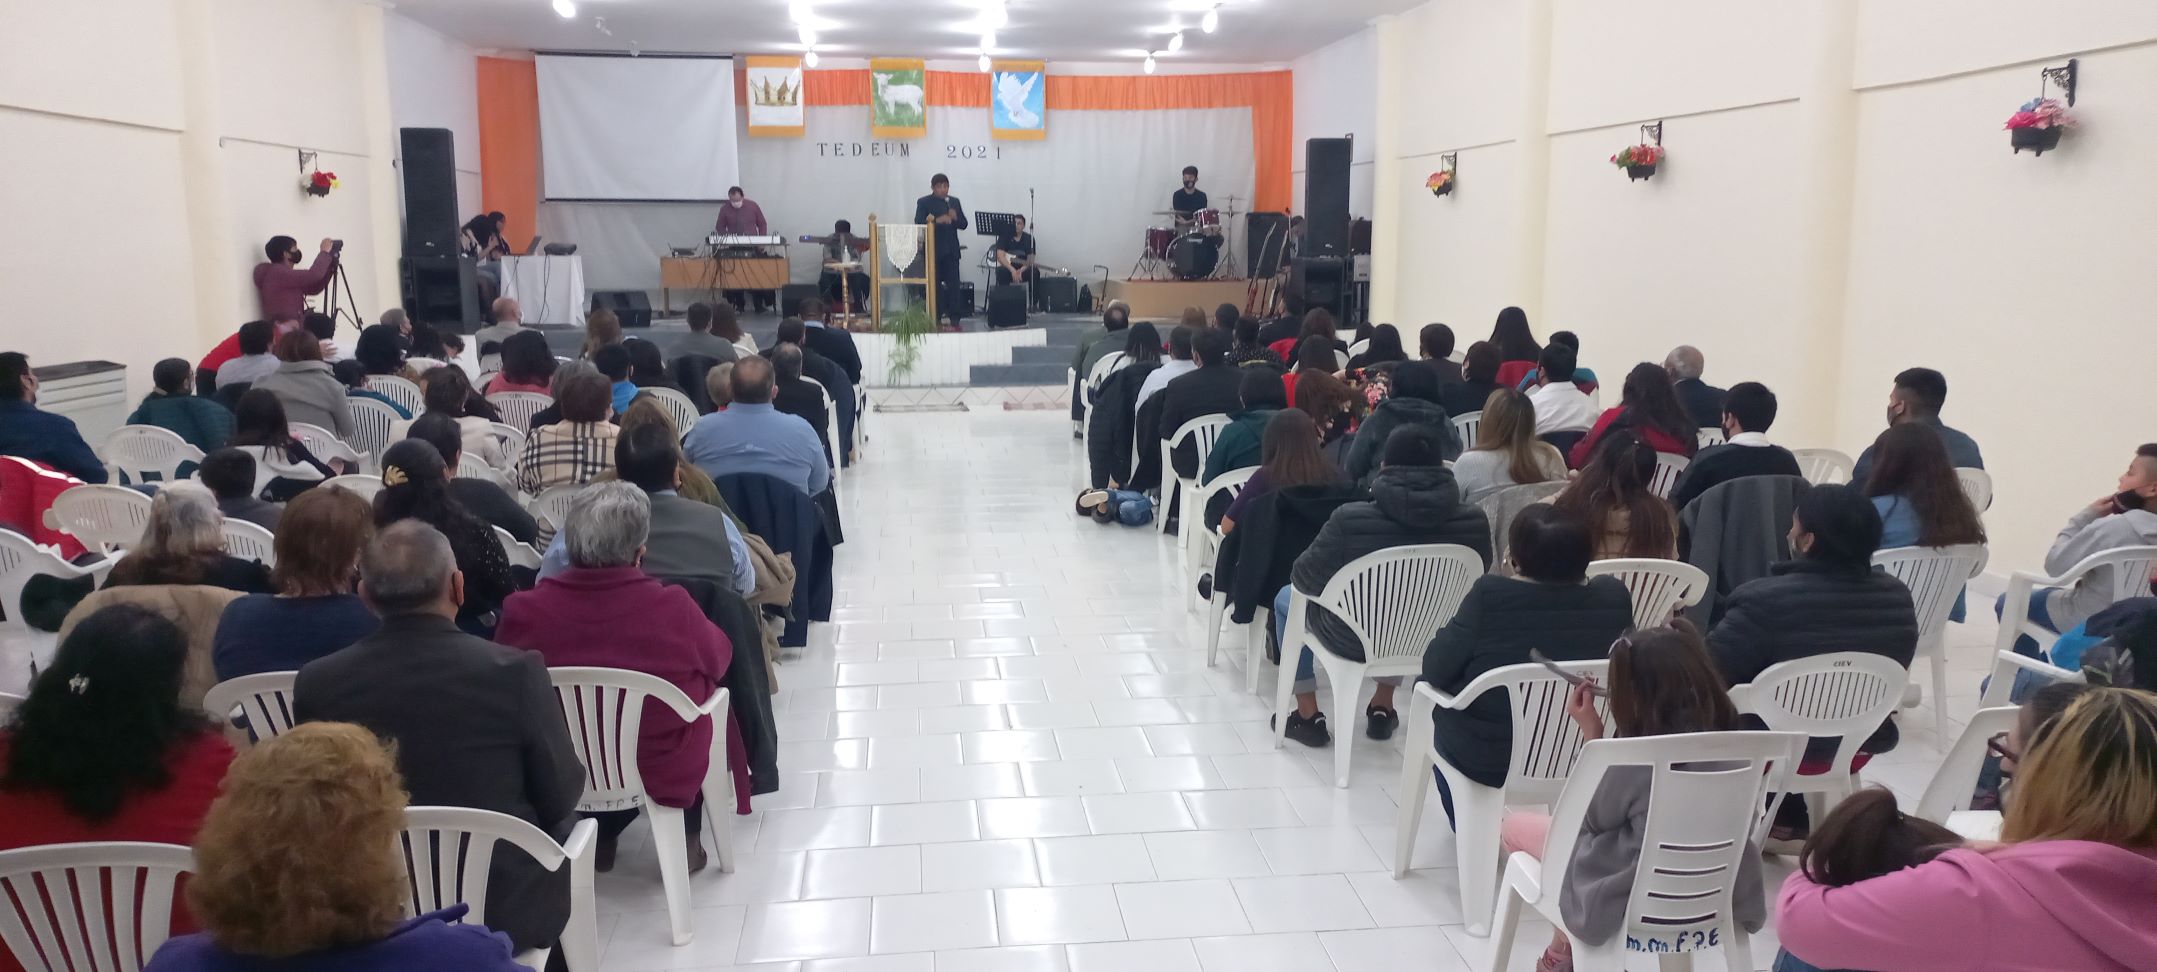 El Tedeum reunió a referentes de las distintas iglesias evangélicas de Jacobacci. Foto: José Mellado.